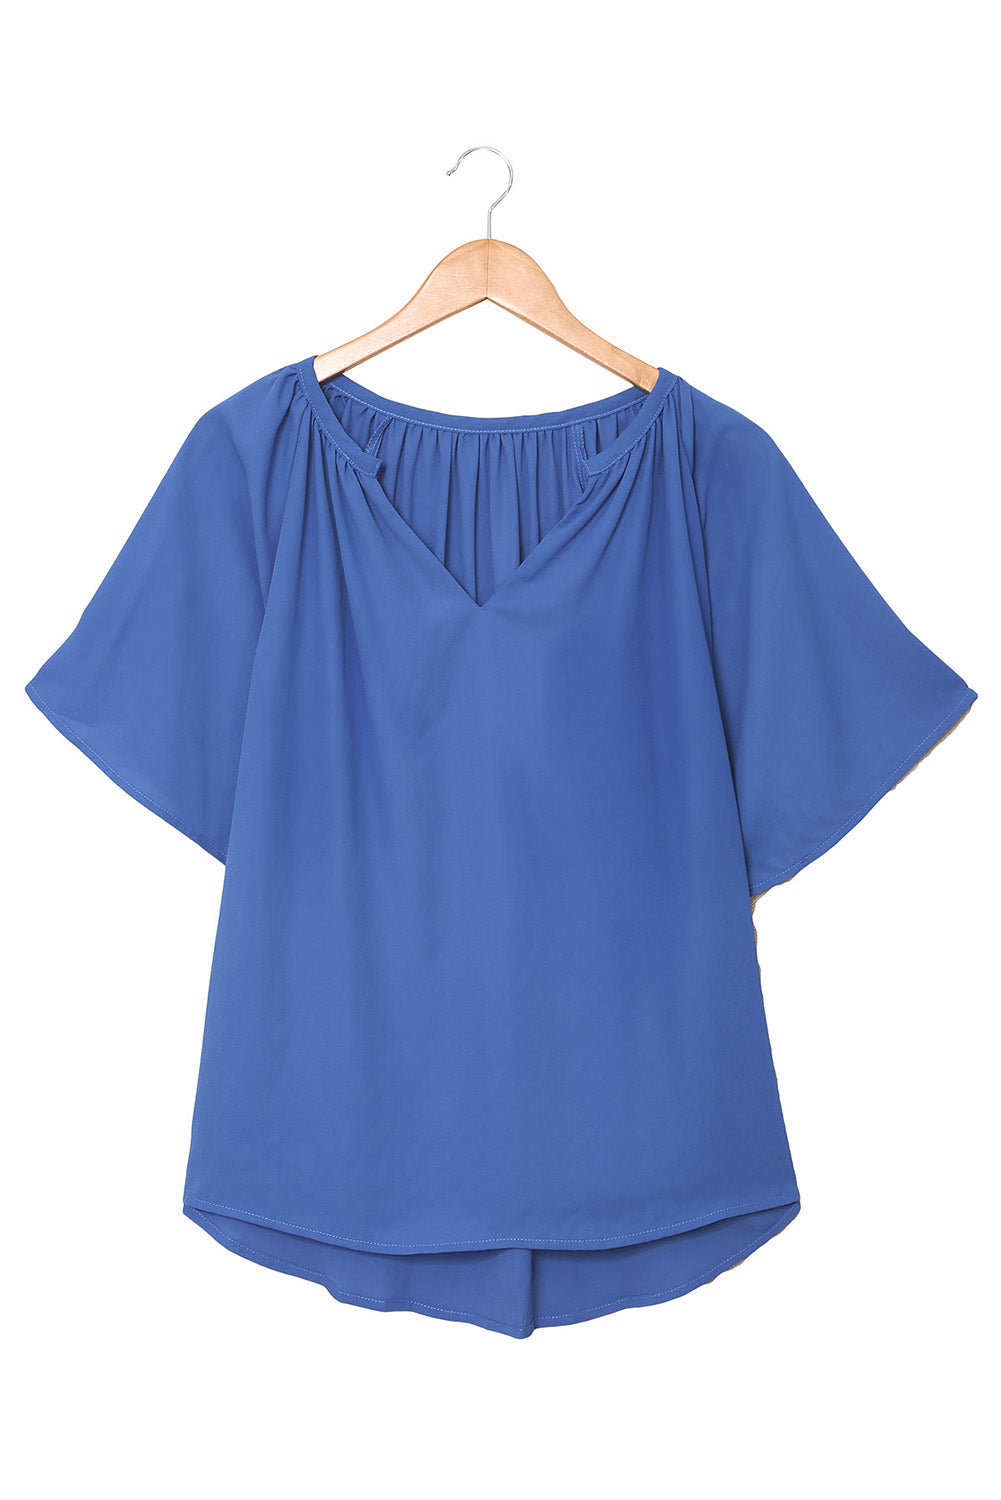 Blaue, plissierte, lockere Bluse mit geteiltem Ausschnitt